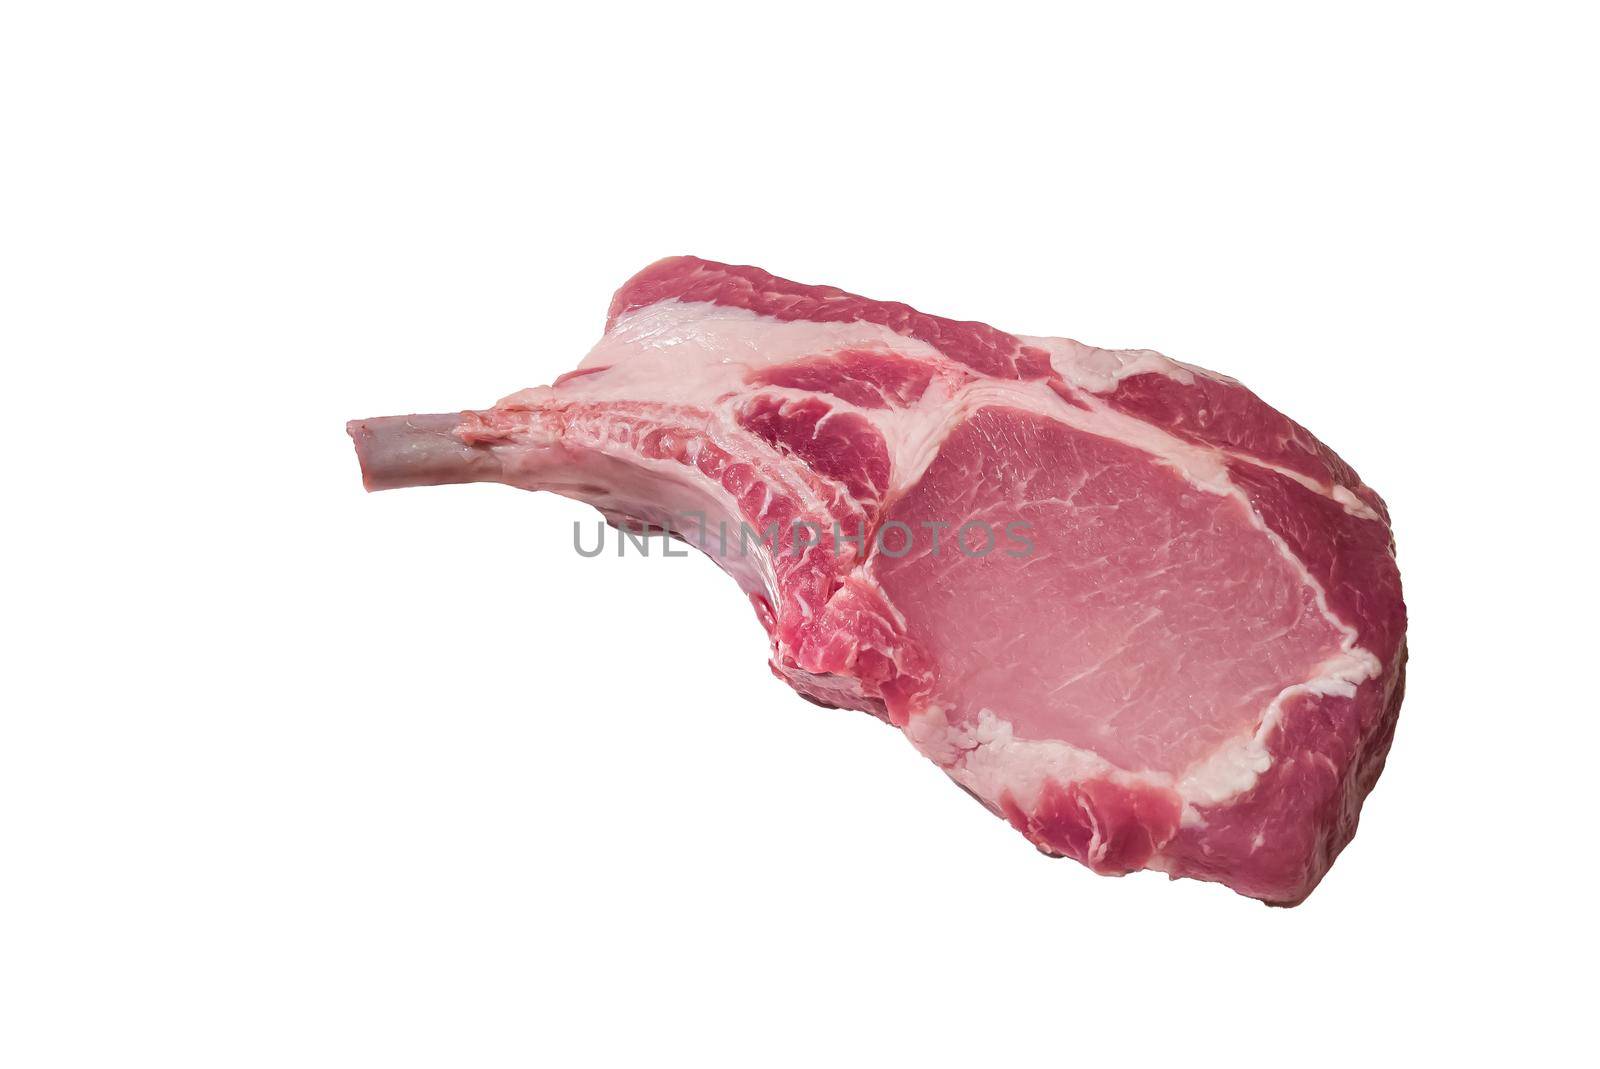 Raw pork loin Raw pork loin on the bone with baconon.